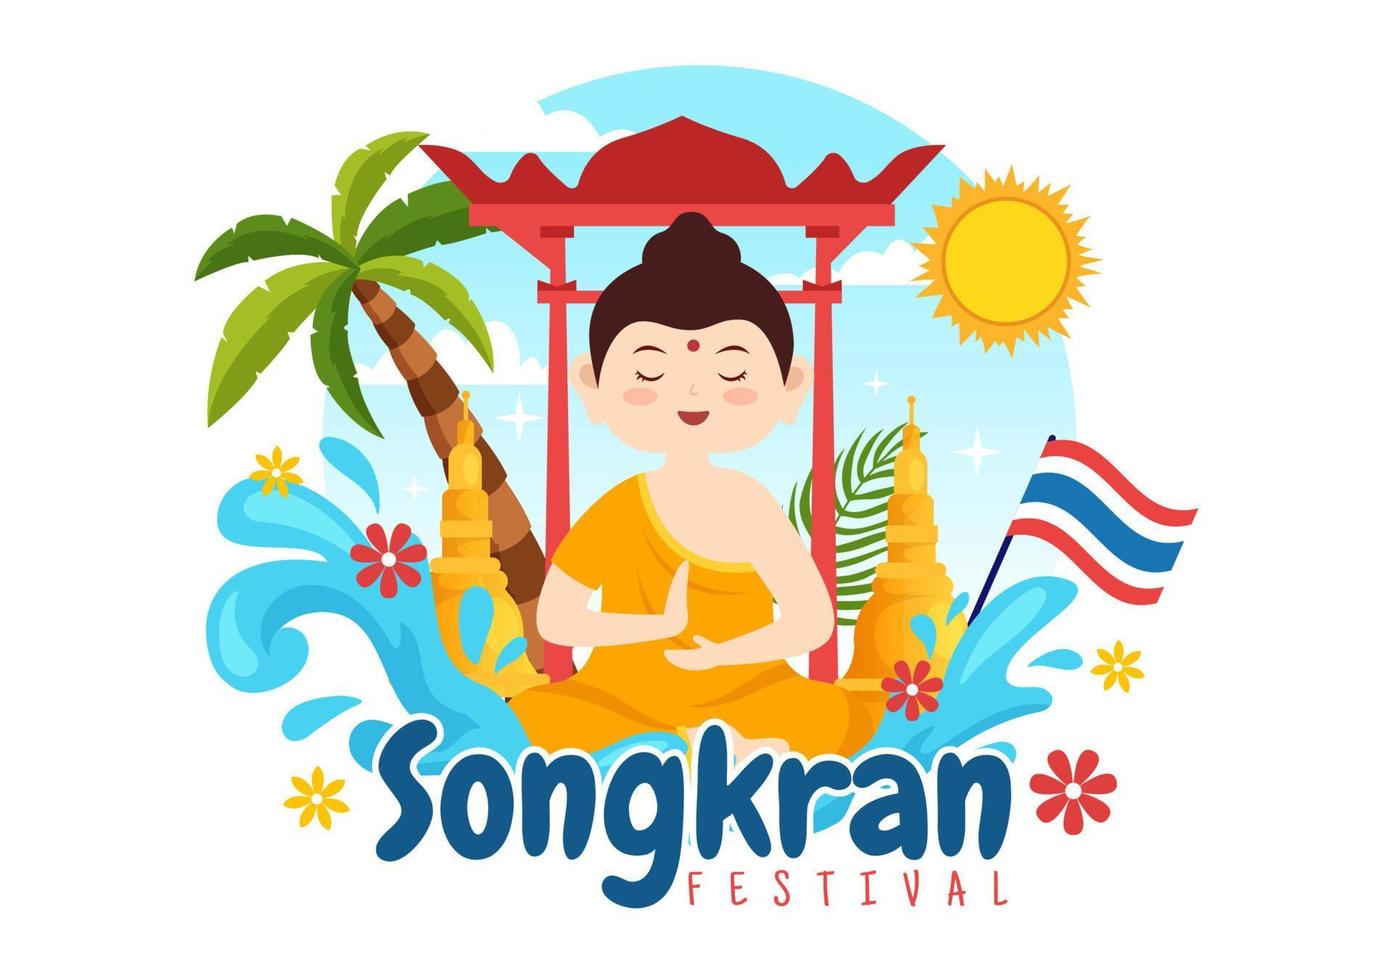 glücklich Songkran Festival Tag Illustration mit spielen Wasser Gewehr im Thailand Feier im eben Karikatur Hand gezeichnet zum Landung Seite Vorlagen vektor